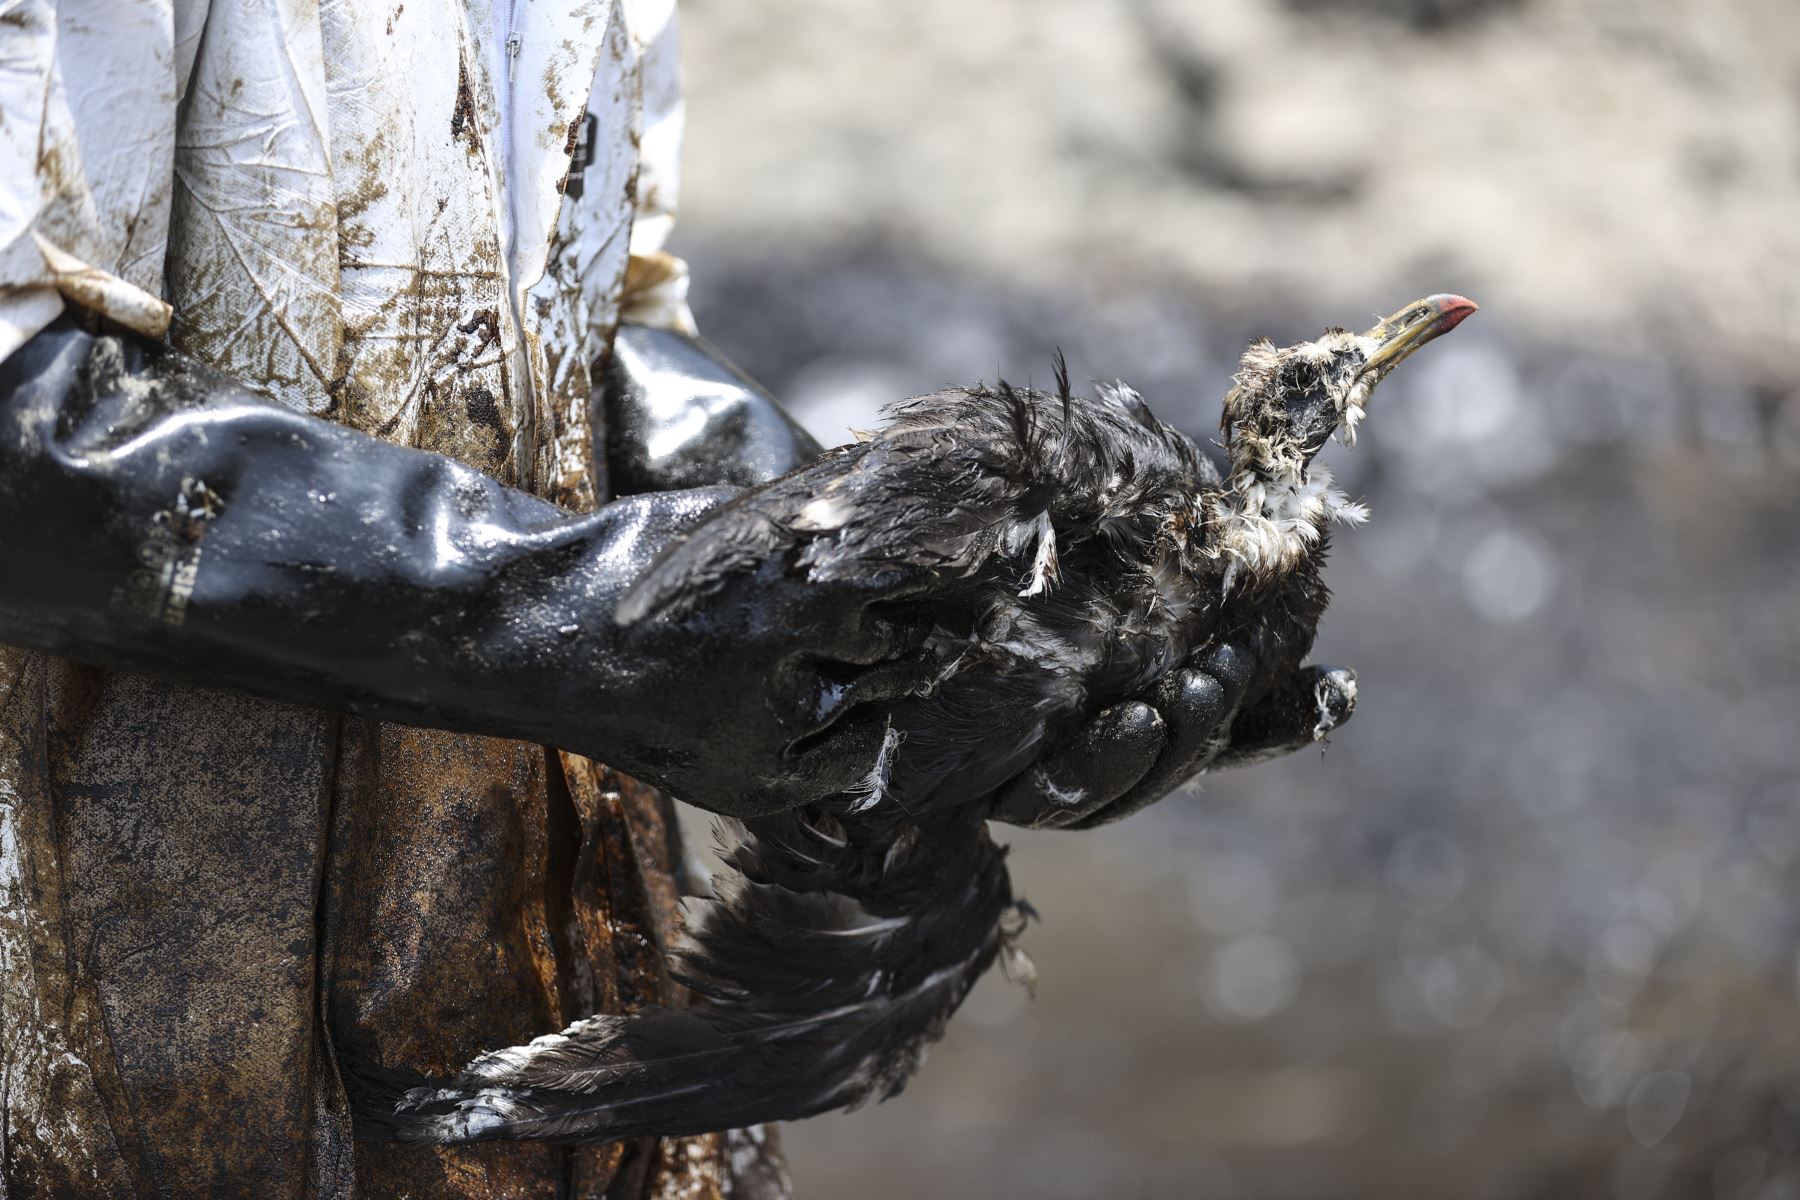 Región Lima denunciará a empresa Repsol por desastre ecológico ocasionado por el derrame de petróleo en mar de Ventanilla. ANDINA/Jhonel Rodríguez Robles